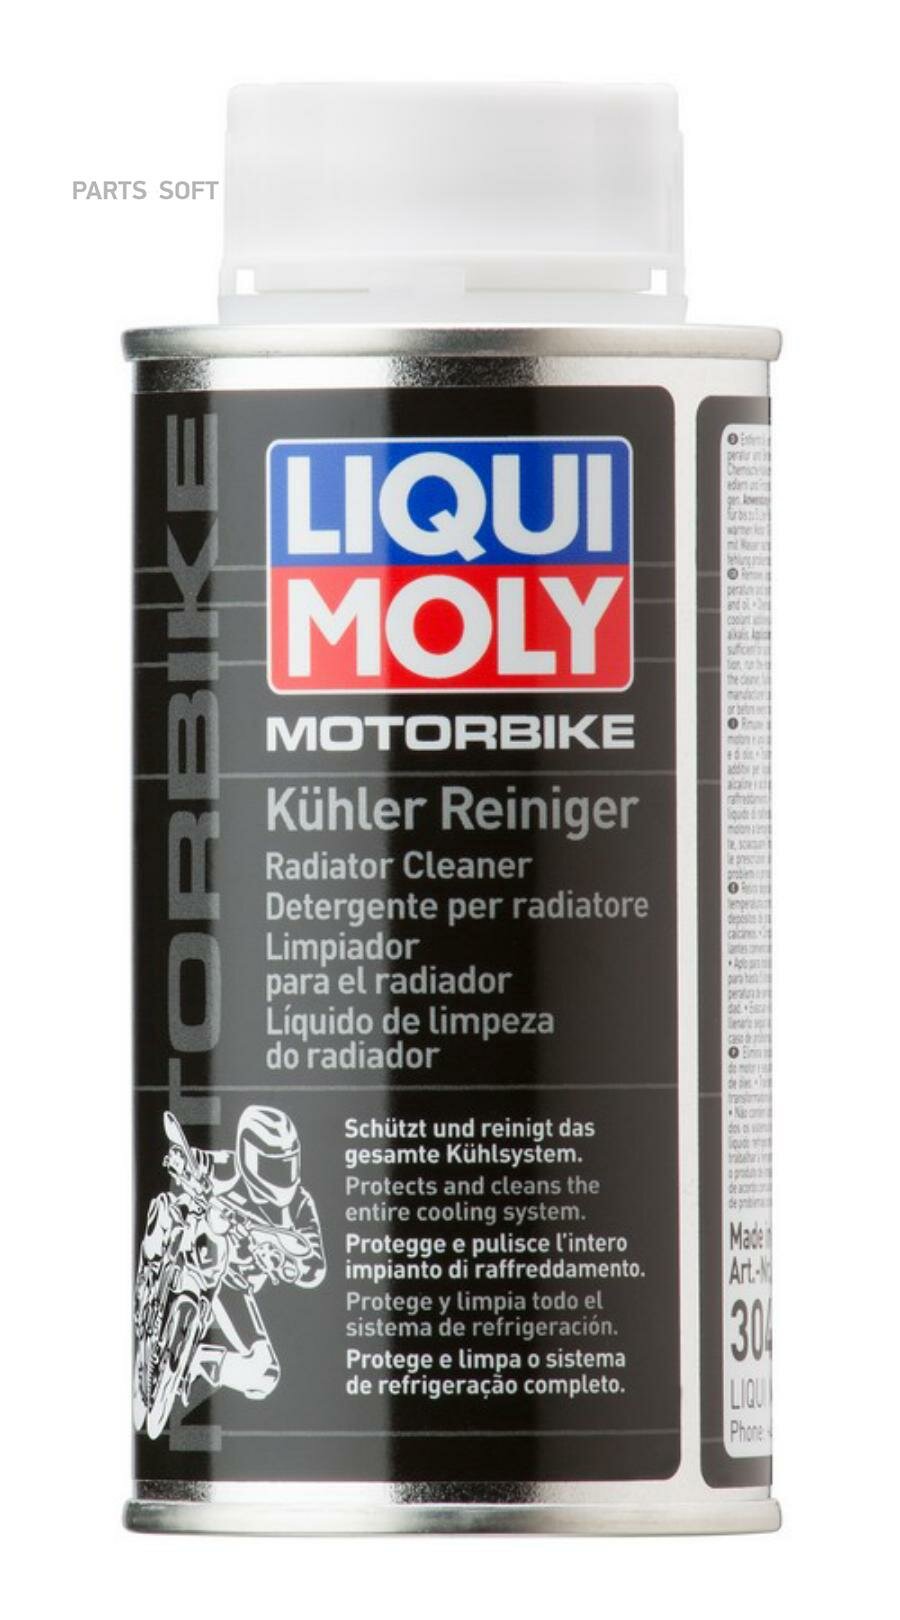 LIQUI MOLY 3042 LiquiMoly Motorbike Kuhler Reiniger (0.15L)_очиститель сист.охлаждения!\